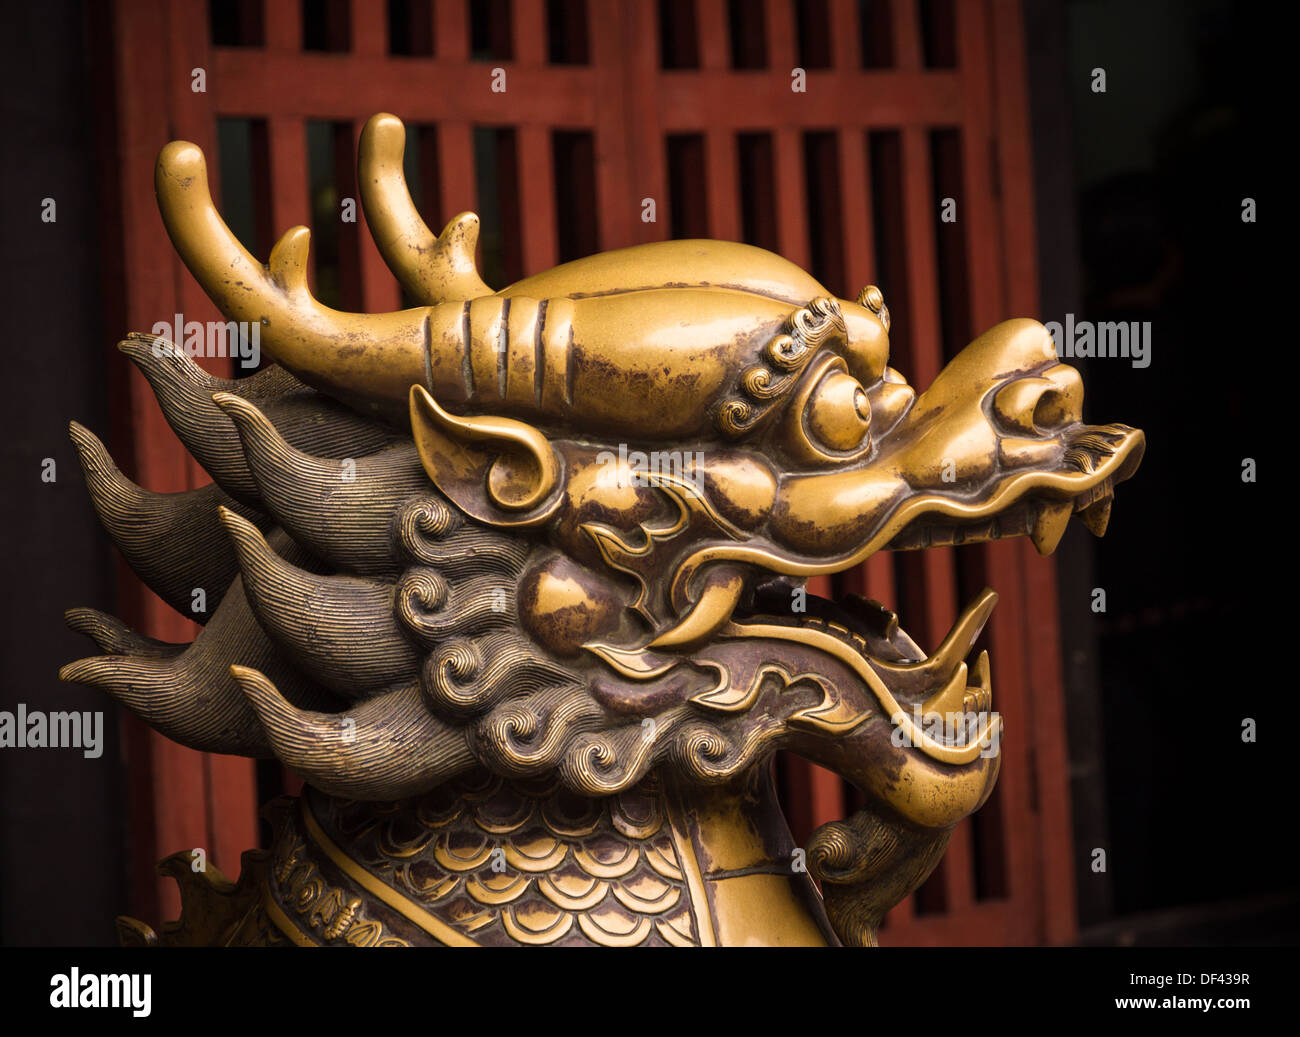 Chinese dragon in bronze, Wenshu Monastery, Chengdu, China Stock Photo